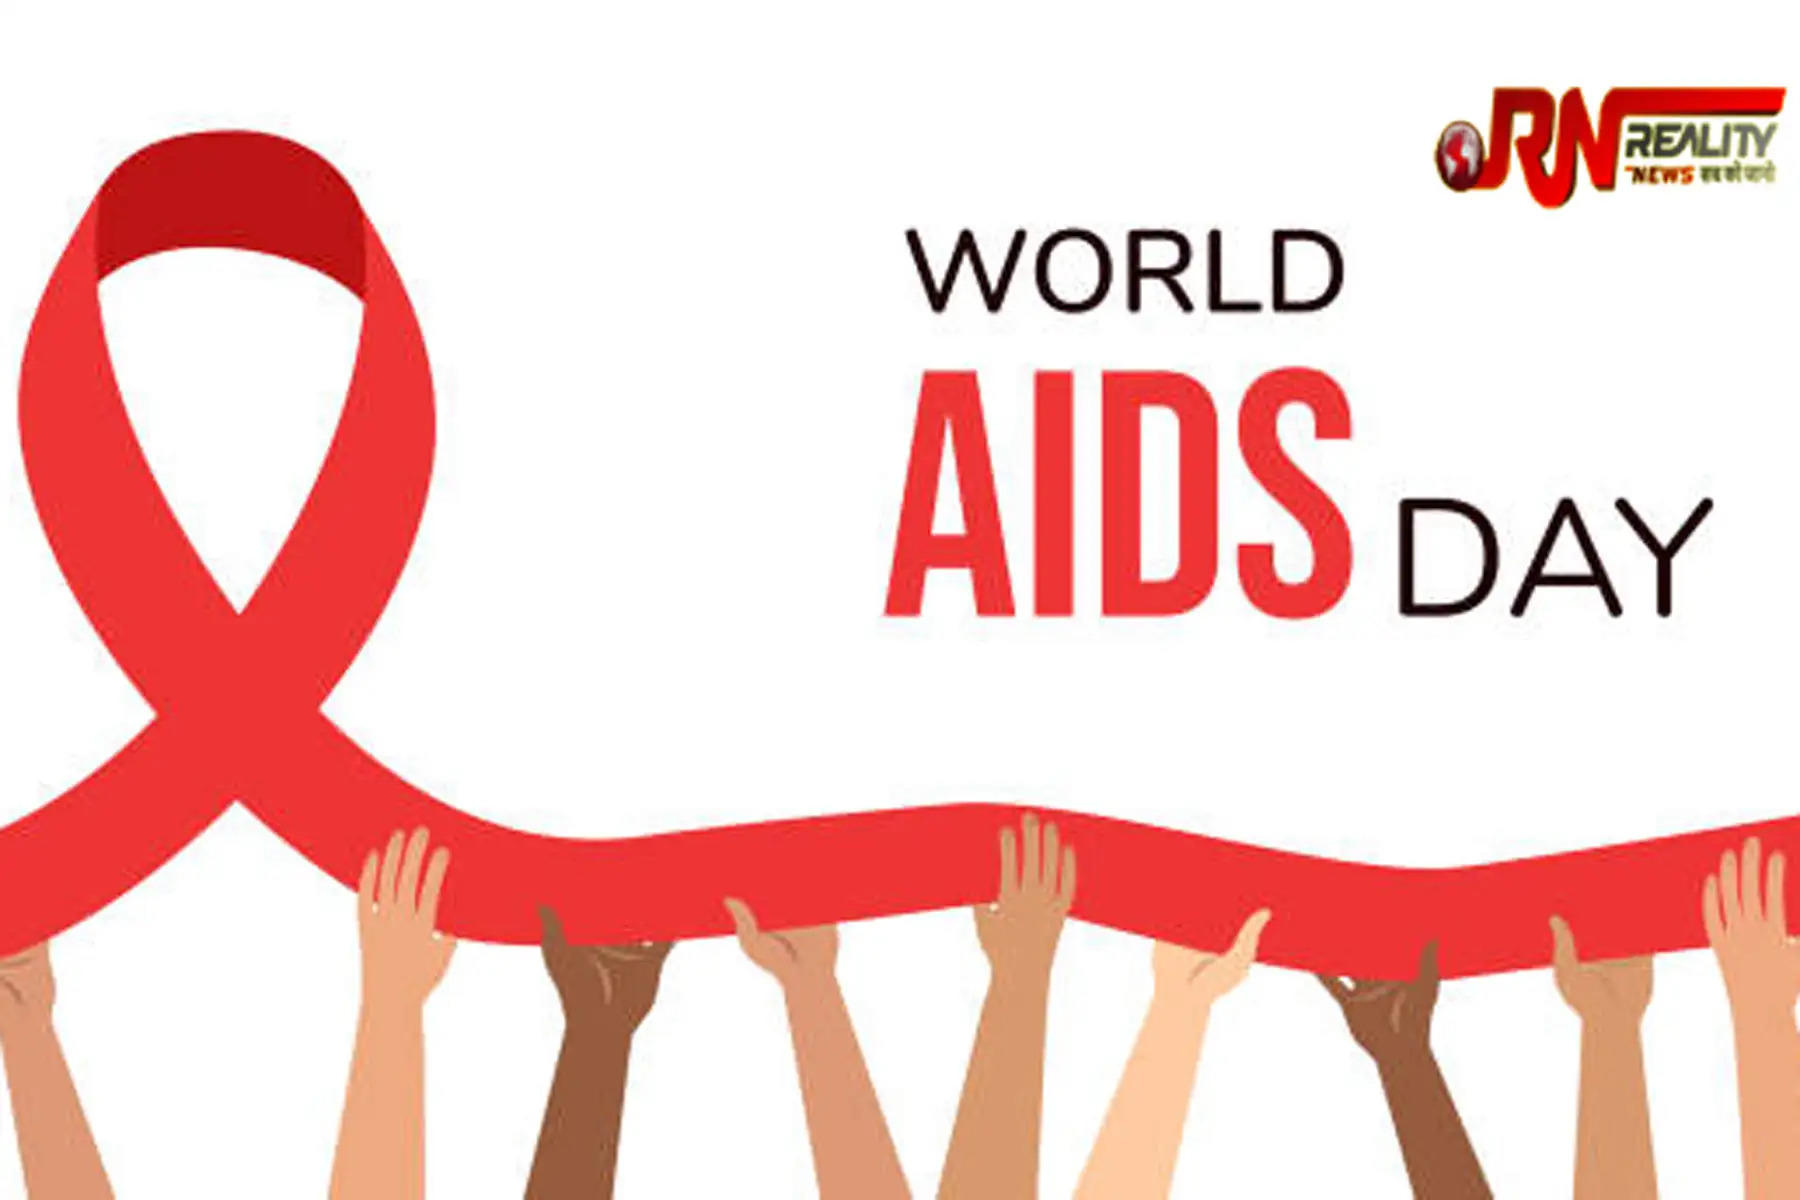 World AIDS Day 2022: एड्स डे को हर साल 1 दिसंबर को मनाया जाता है। एड्स ह्यूमन इम्यून डेफिसिएंसी वायरस (HIV) के संक्रमण से होने वाली बीमारी है। इस बीमारी को लेकर लोगों में कई तरह के कन्फ्यूजन हैं। बता दें कि वल्ड एड्स डे (World AIDS Day) लोगों के बीच जागरूकता बढ़ाने के लिए मनाया जाता है। जानिए वल्ड एड्स डे का इतिहास और इस साल का थीम।